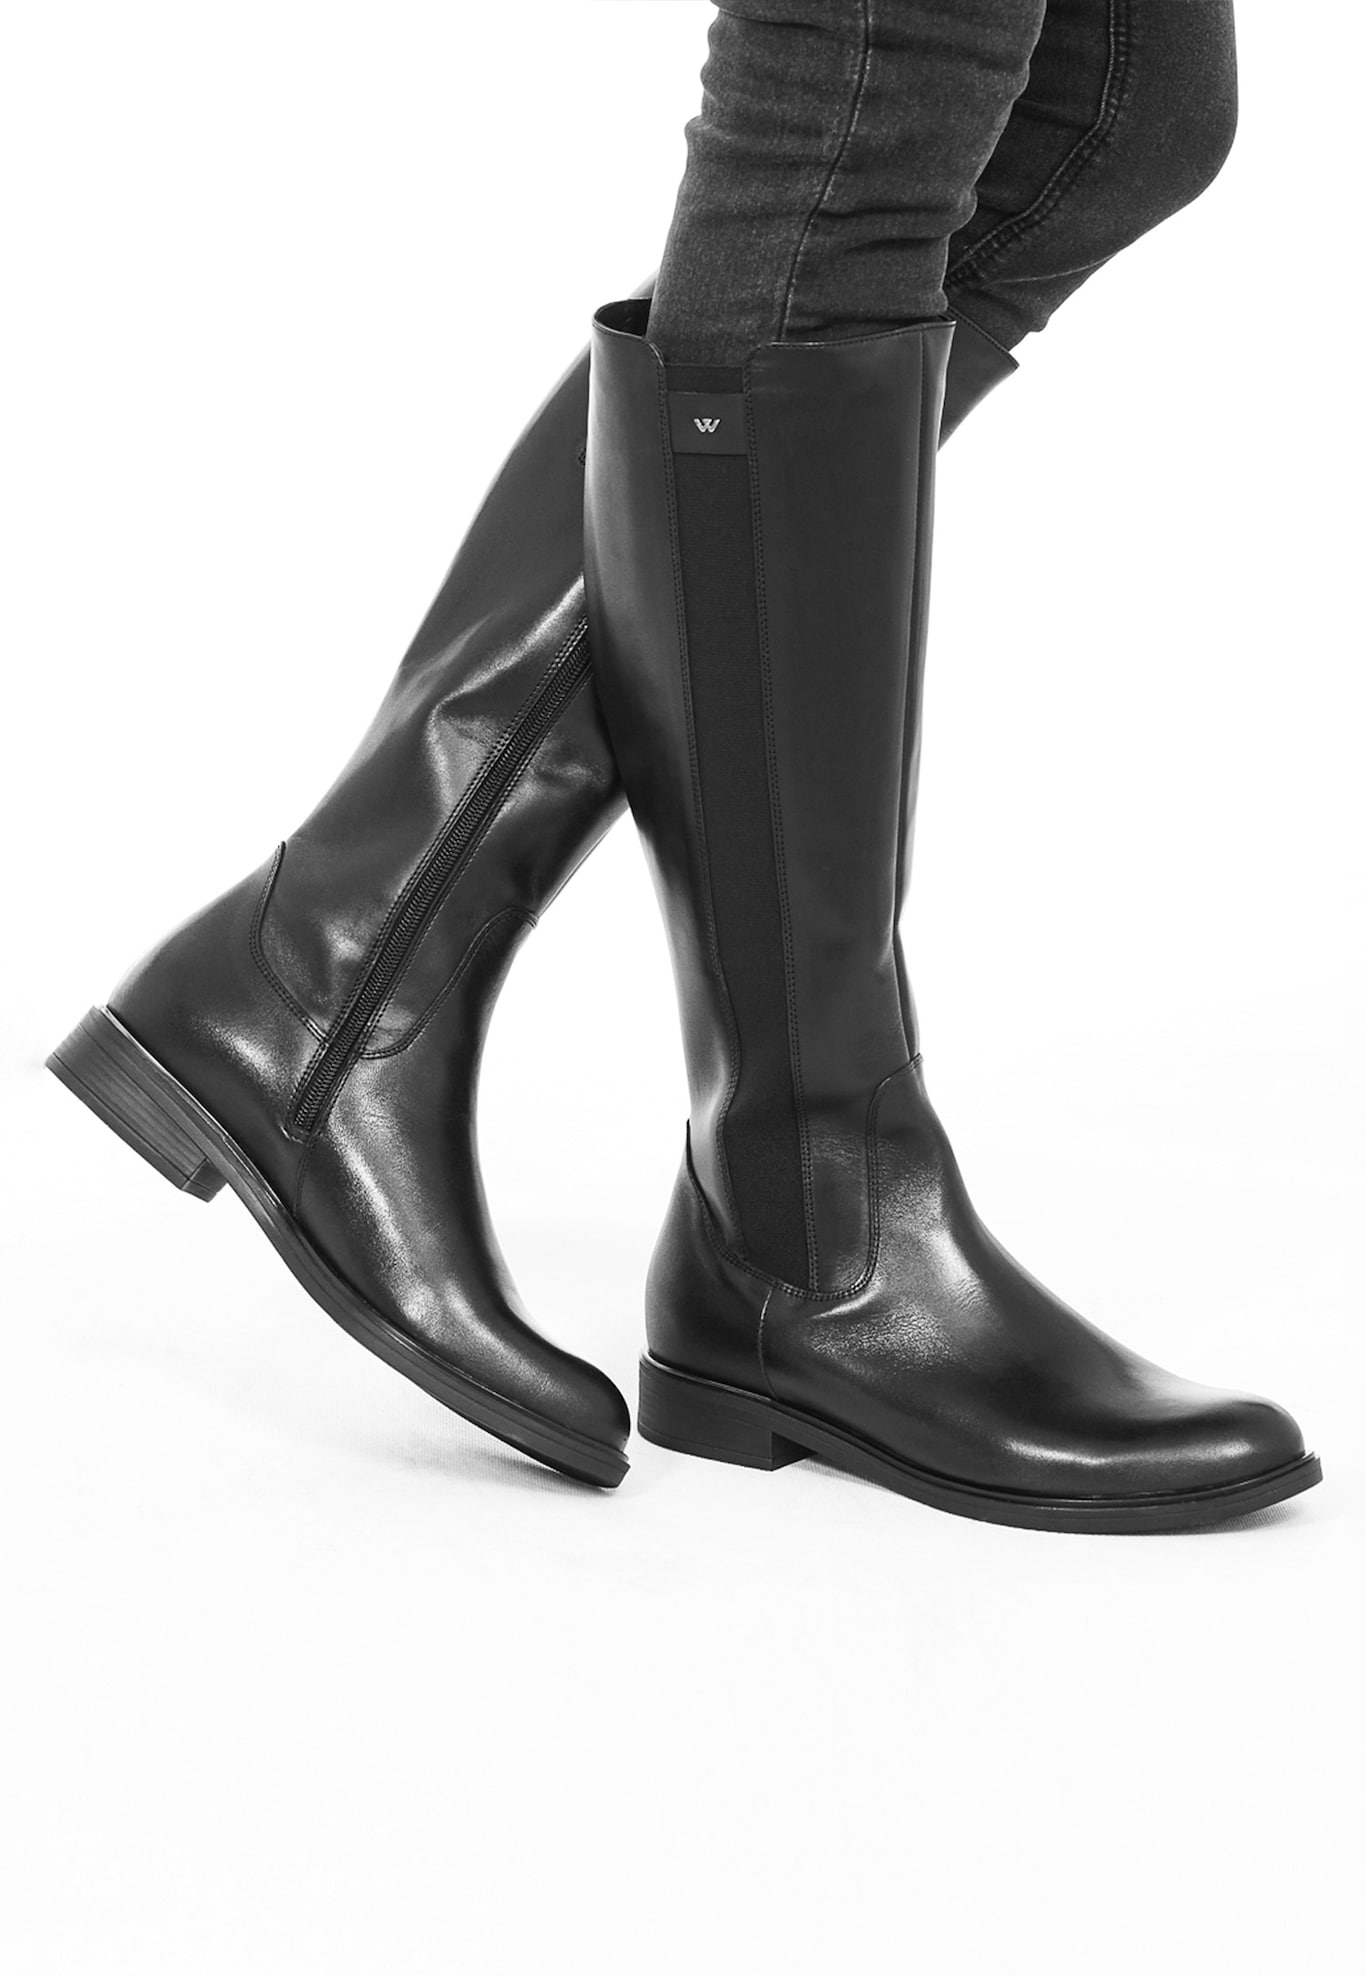 Women's black knee-high boots 8723-51 | Wojas.eu online store